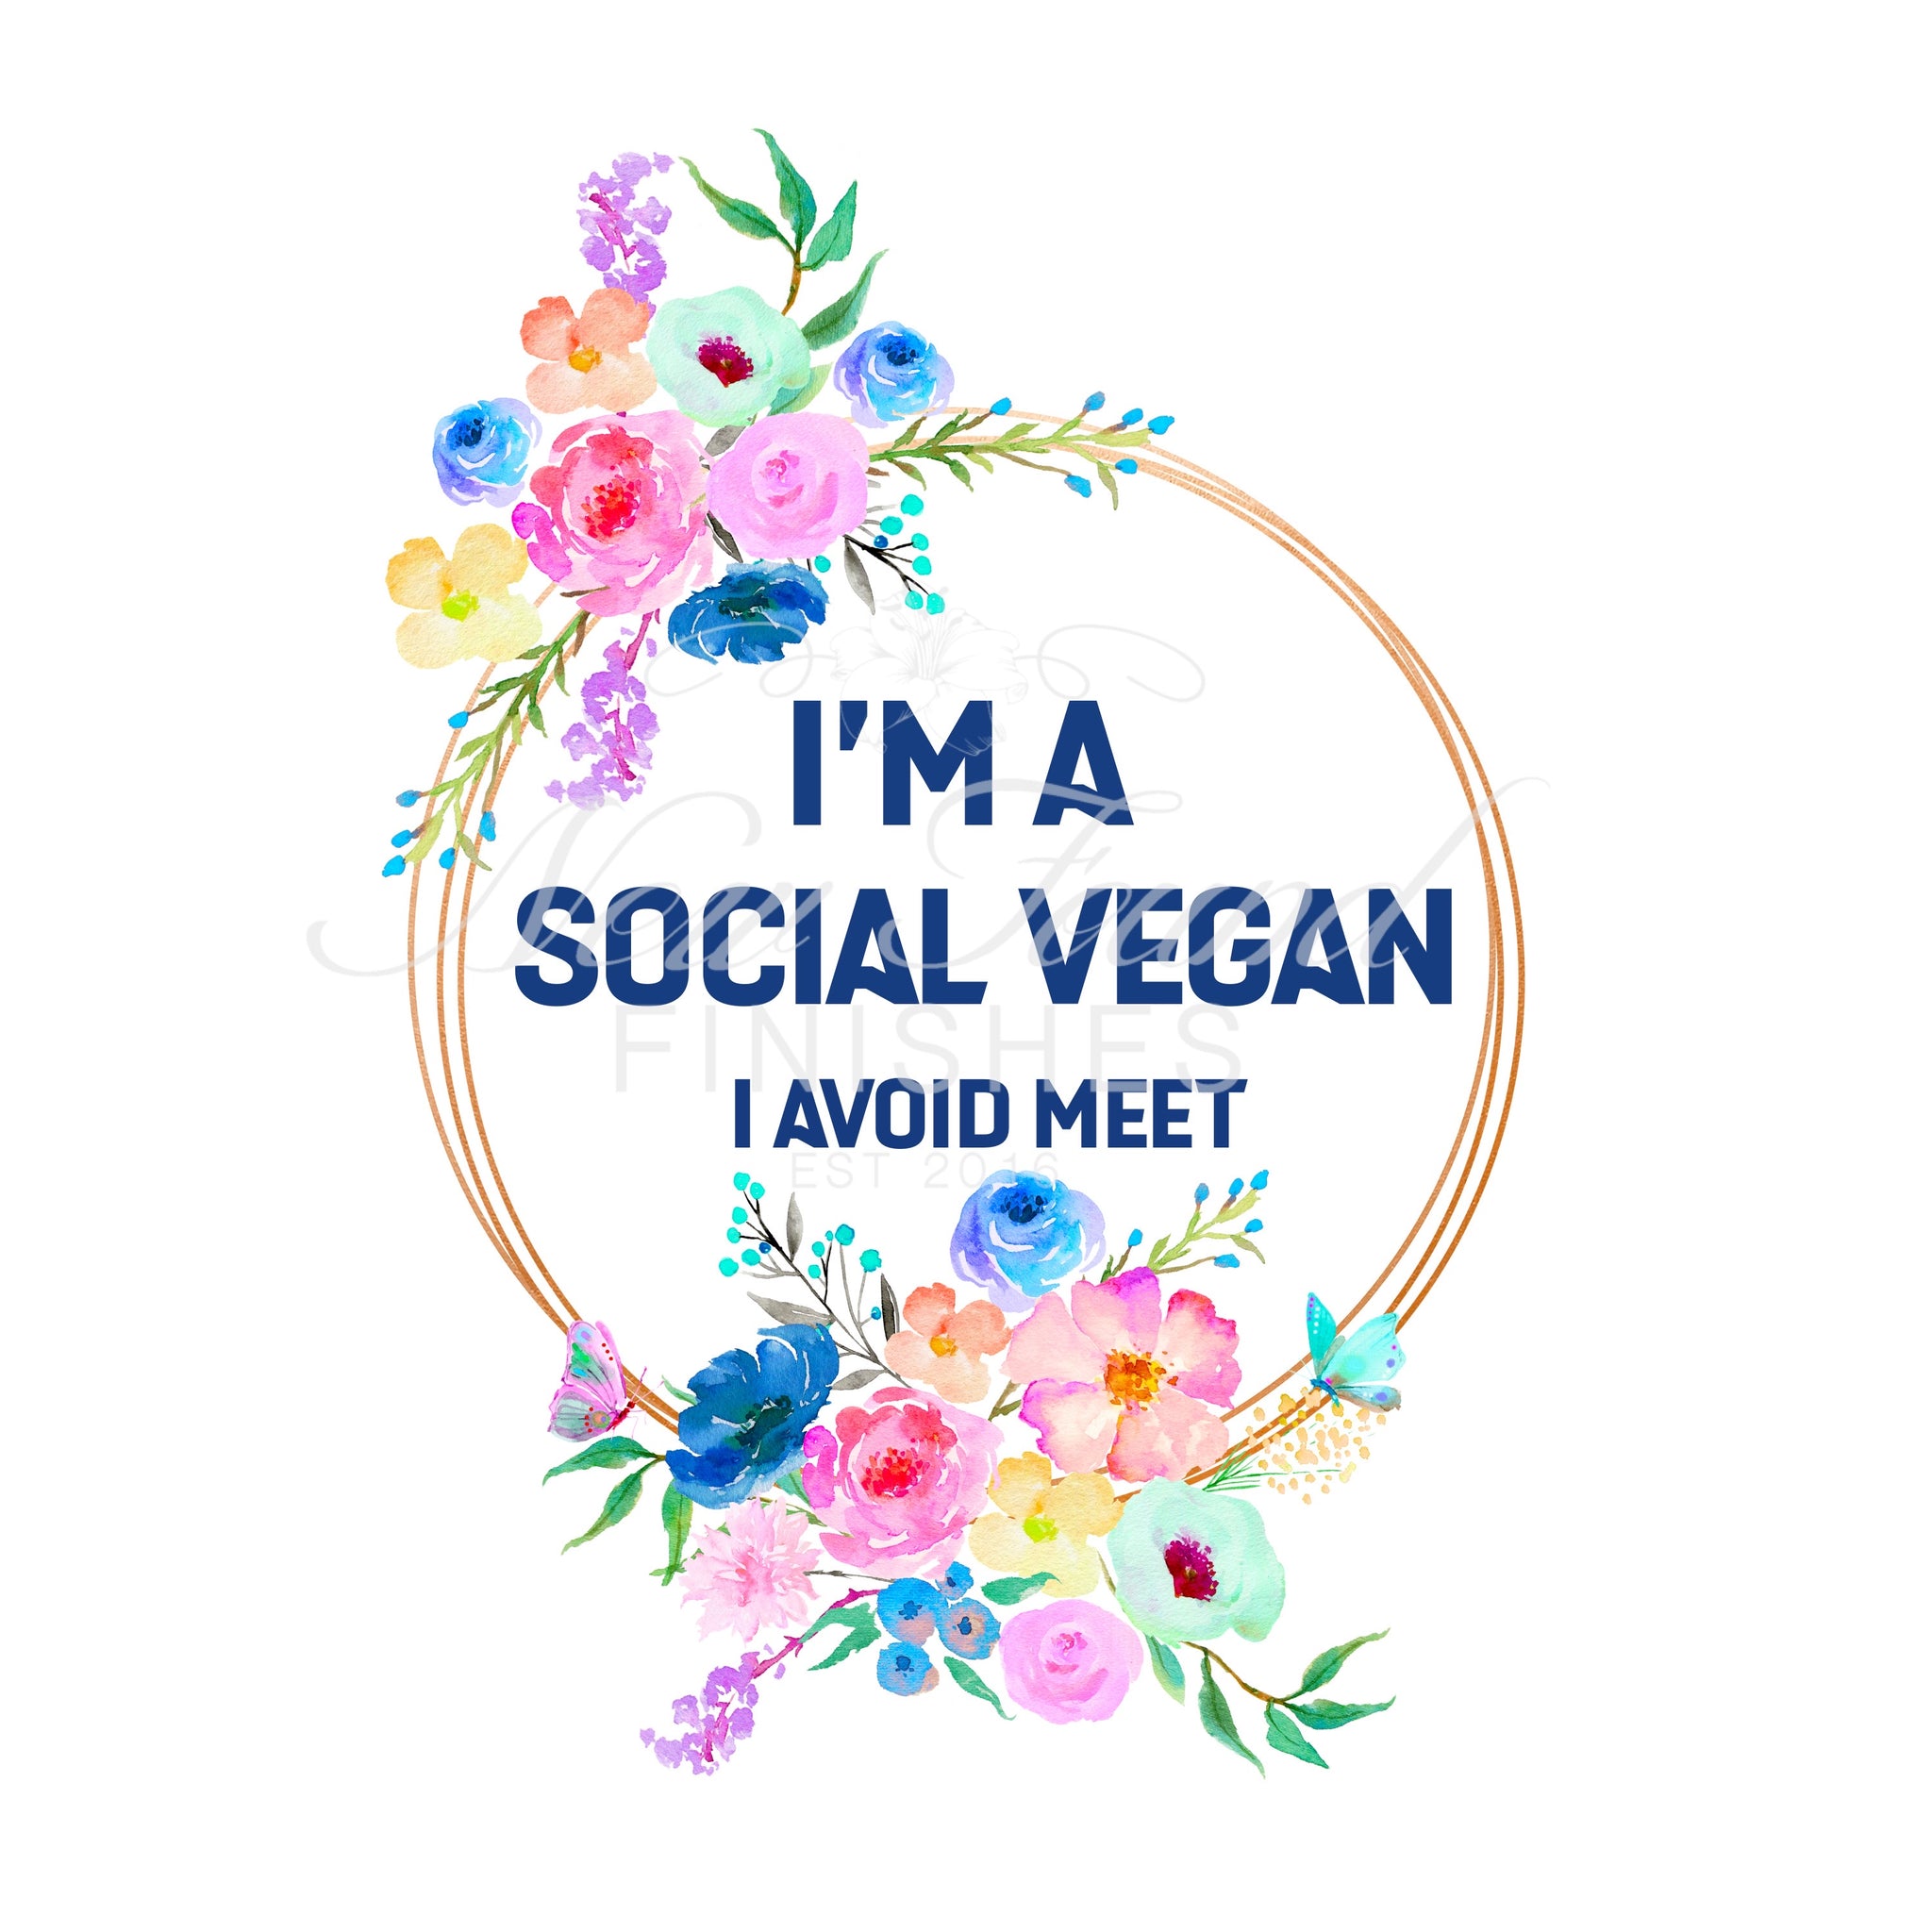 I’m a social vegan